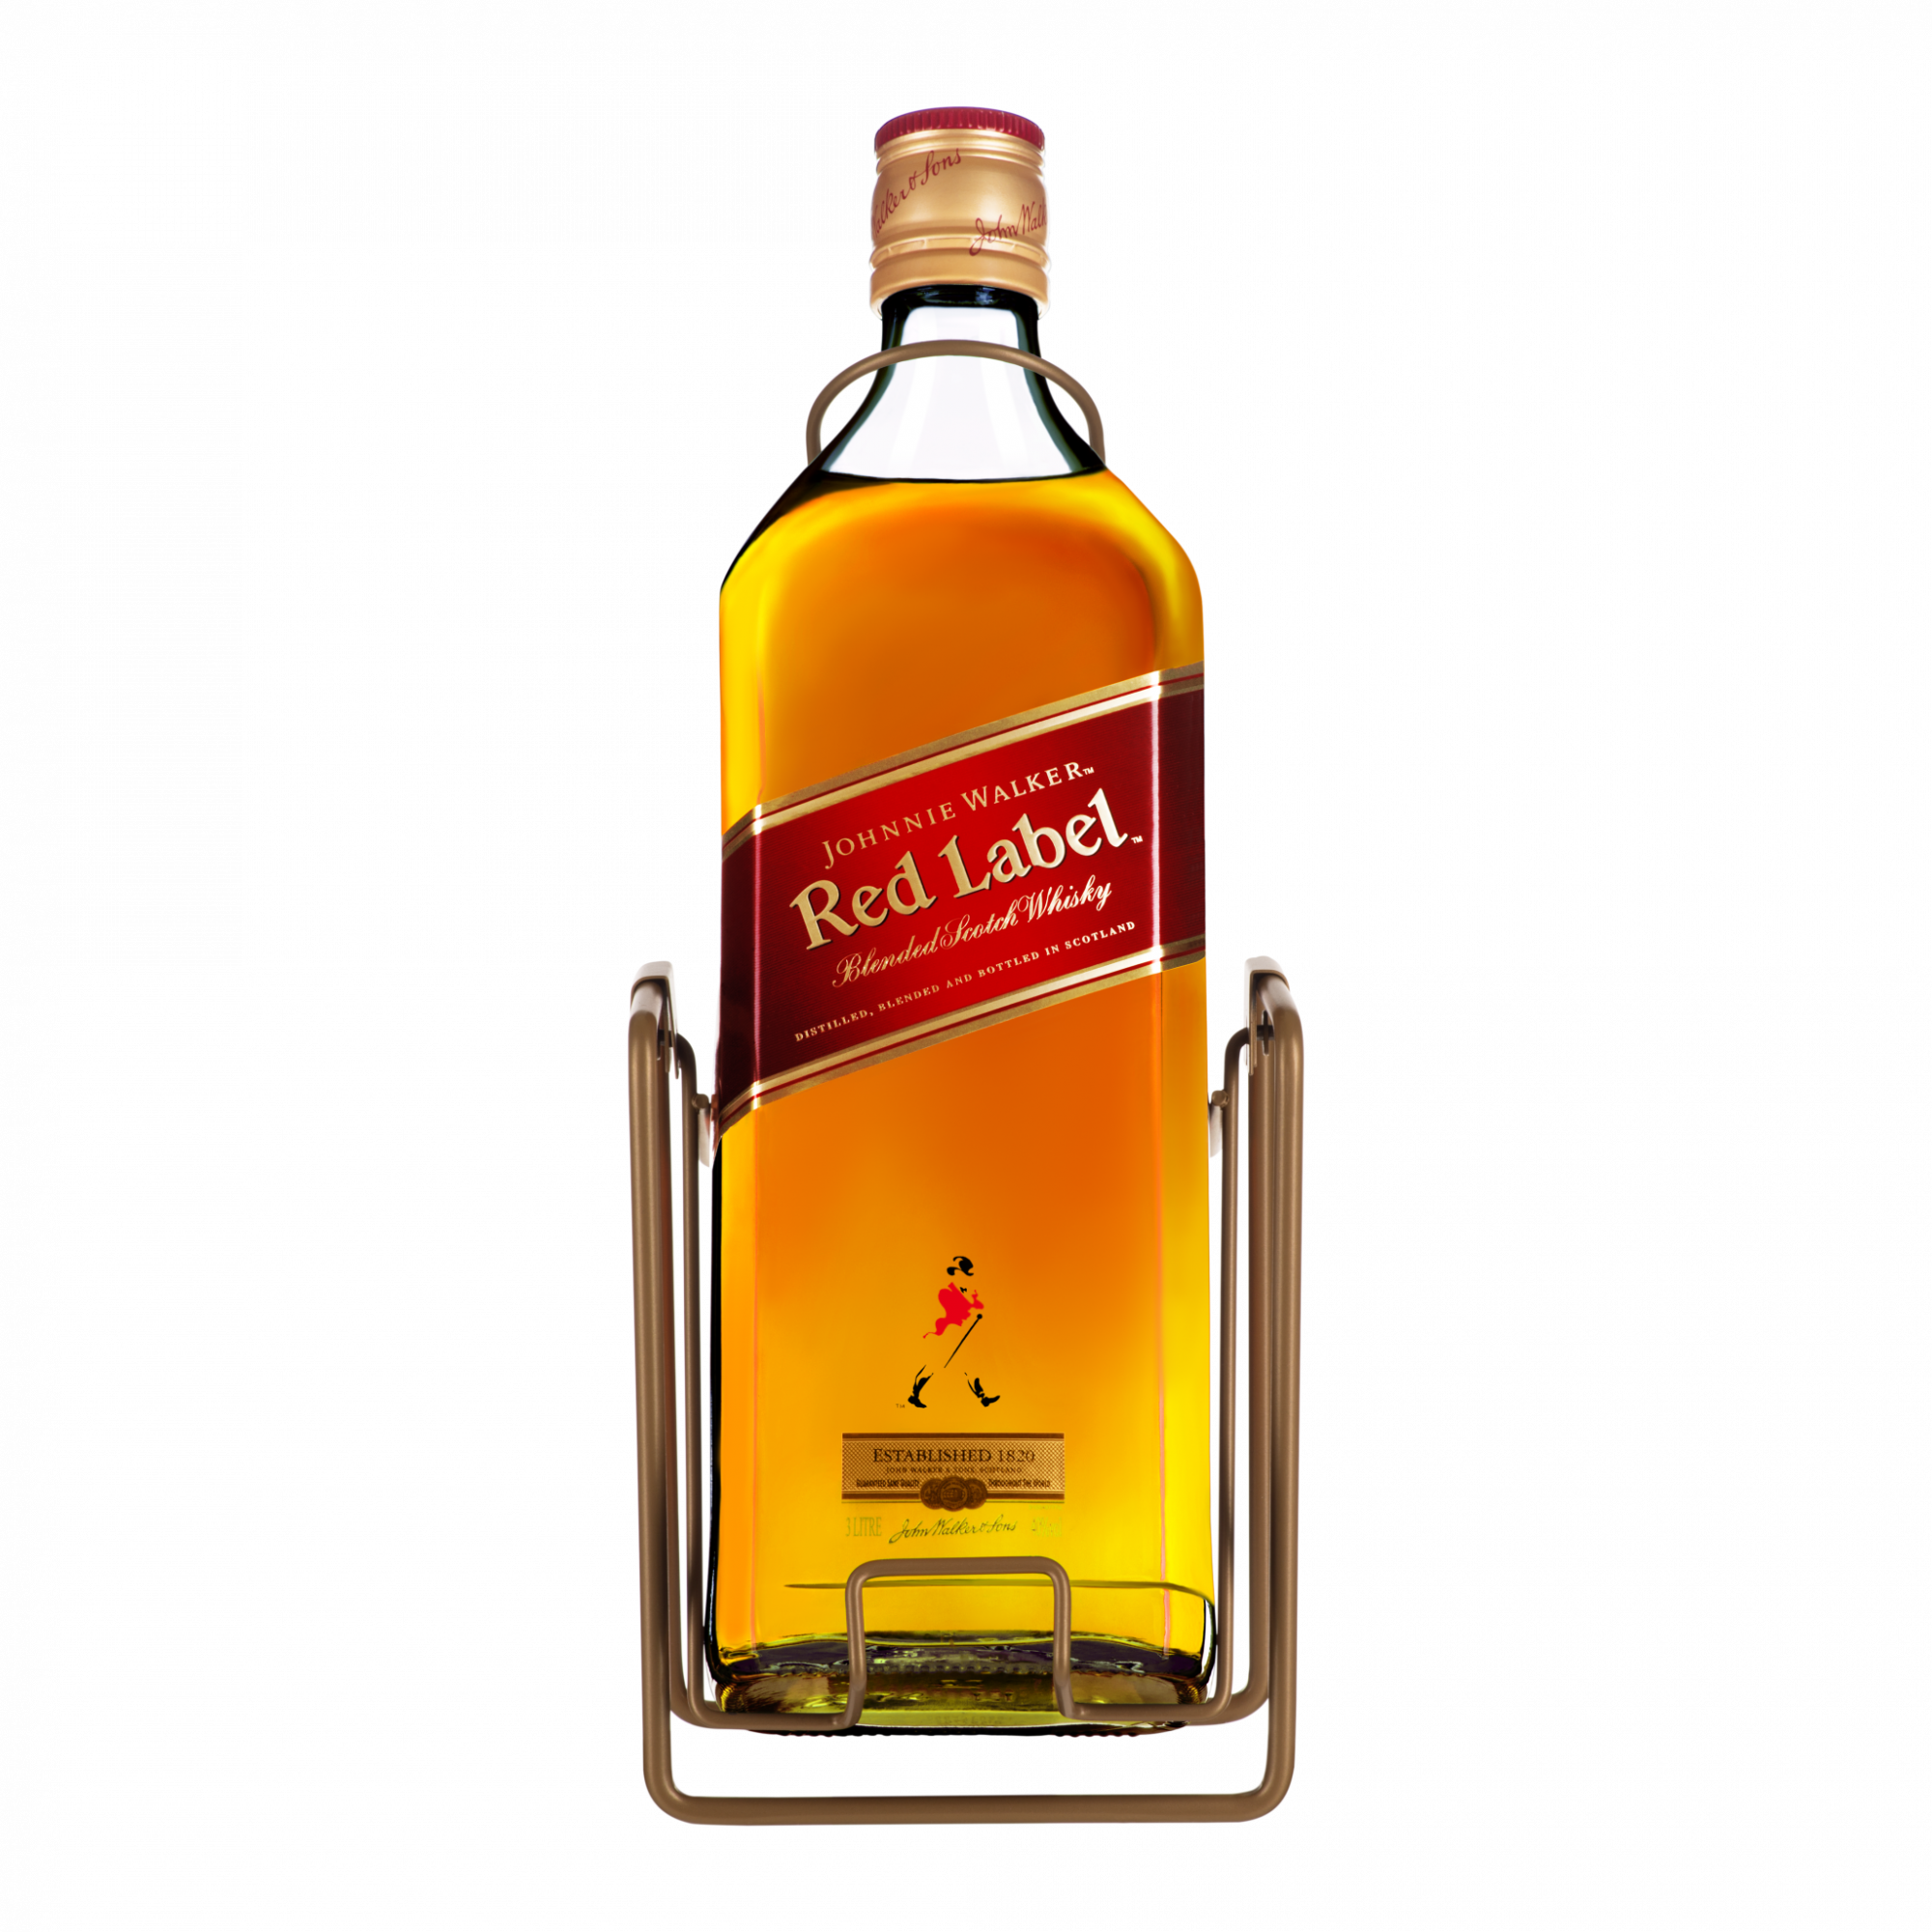 Walker Red Label. Виски Johnnie Walker Red Label. Виски Джонни Уокер ред лейбл 0.5. Виски Johnnie Walker Red 0.5. Ред лейбл 0.5